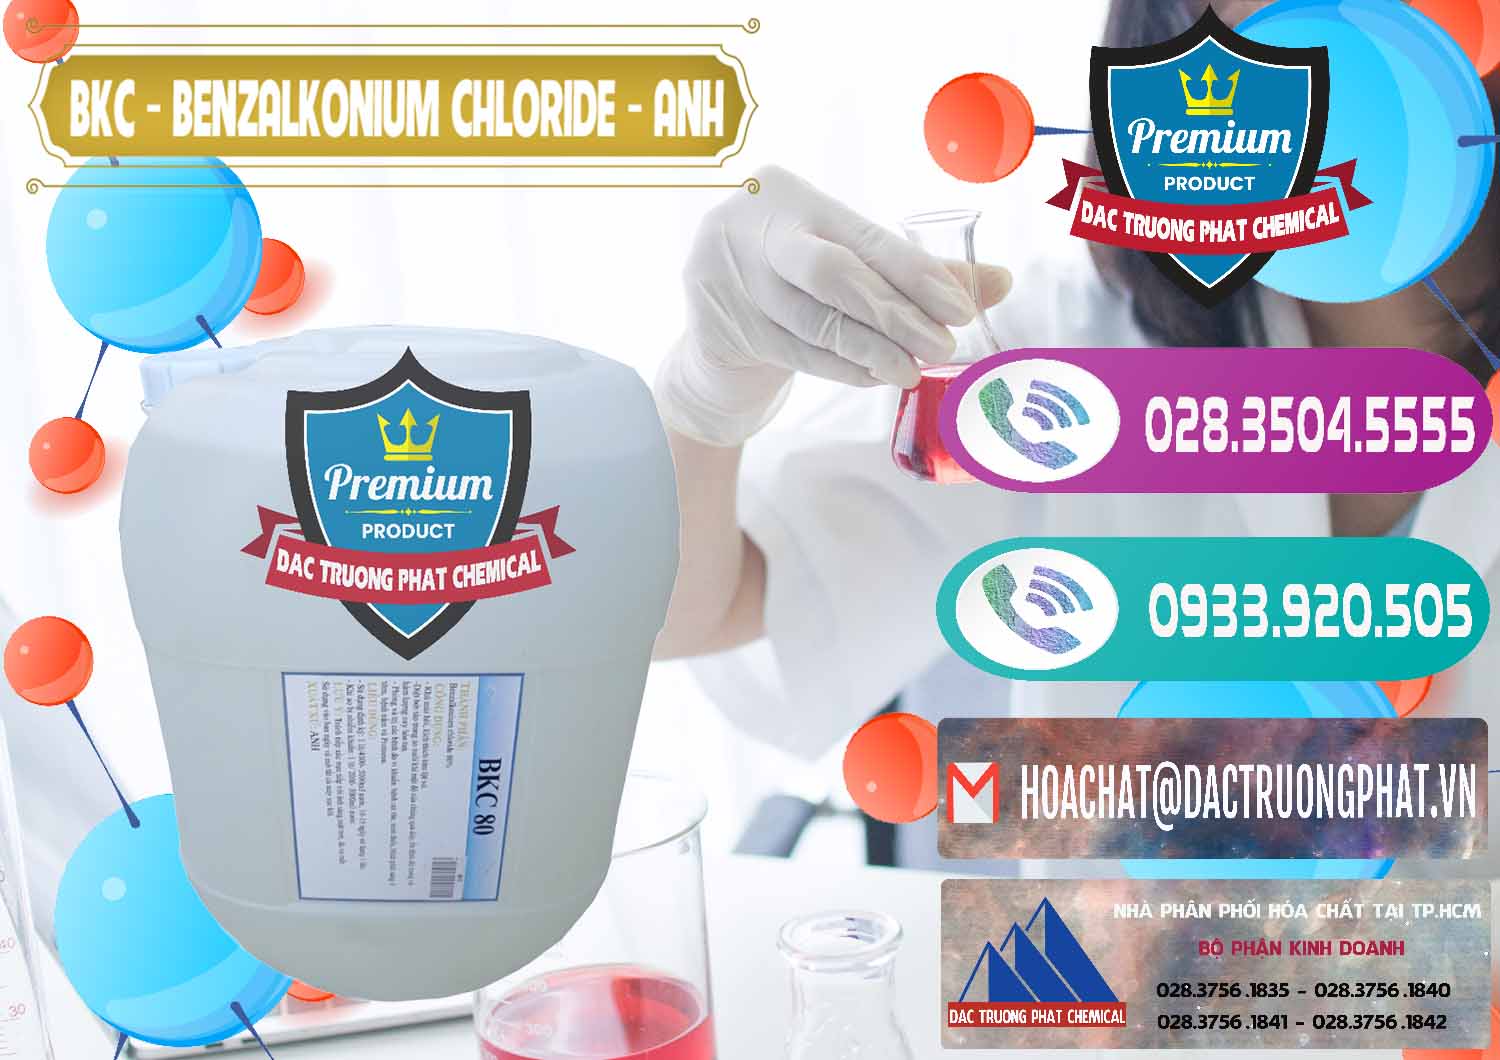 Chuyên kinh doanh _ bán BKC - Benzalkonium Chloride Anh Quốc Uk Kingdoms - 0415 - Cung cấp & phân phối hóa chất tại TP.HCM - hoachatxulynuoc.com